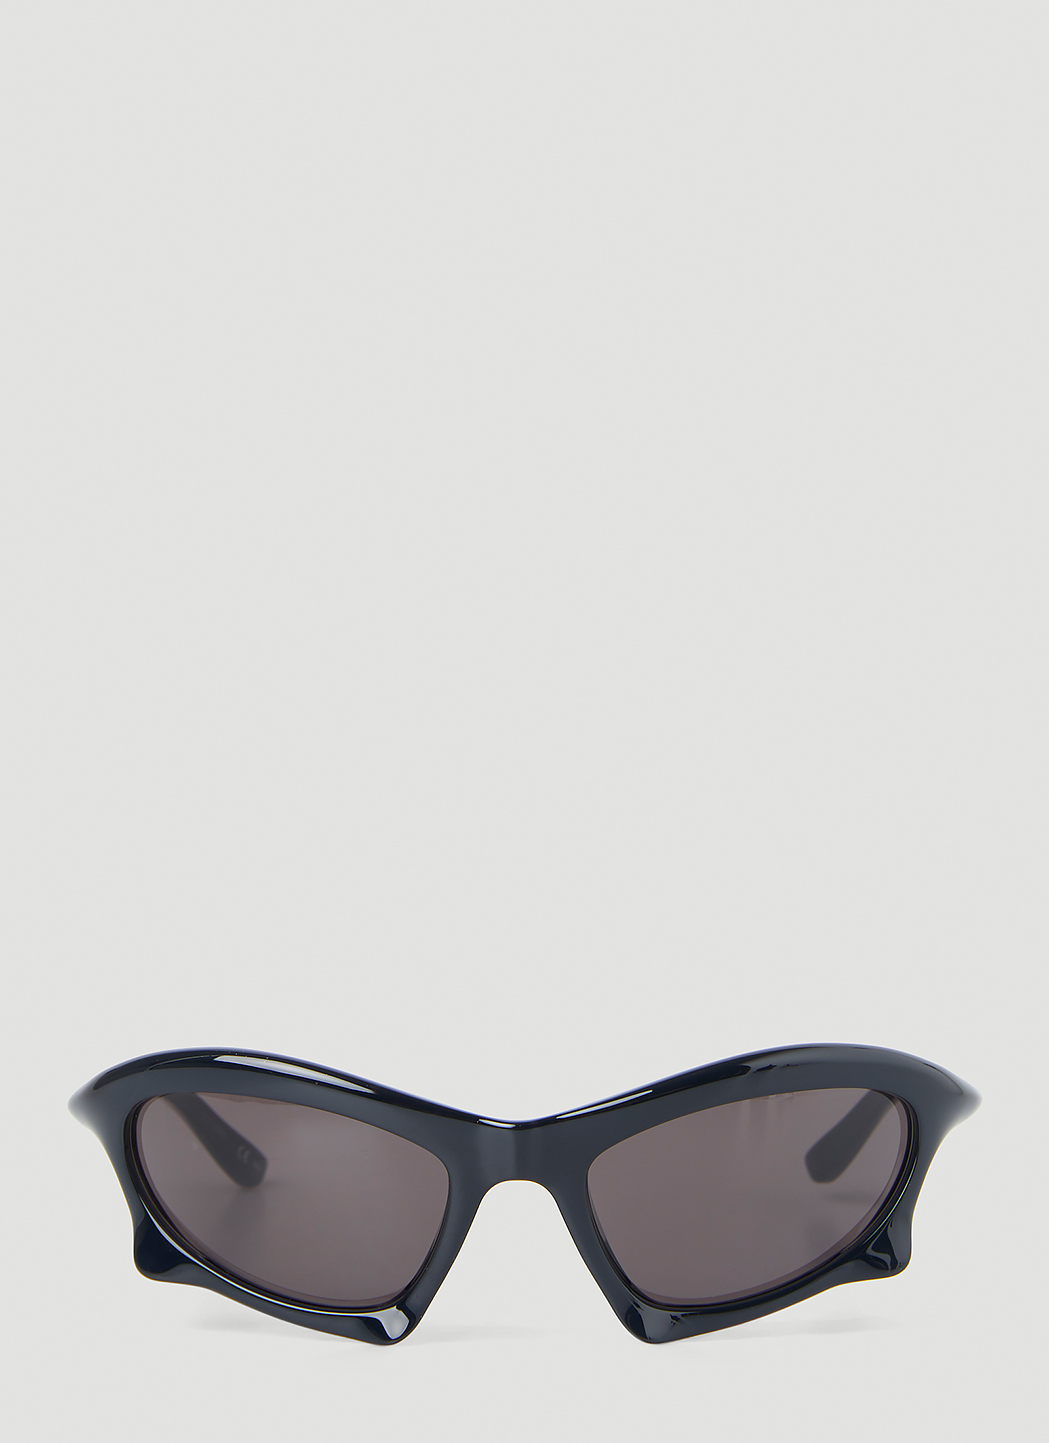 Bat Rectangle Sunglasses